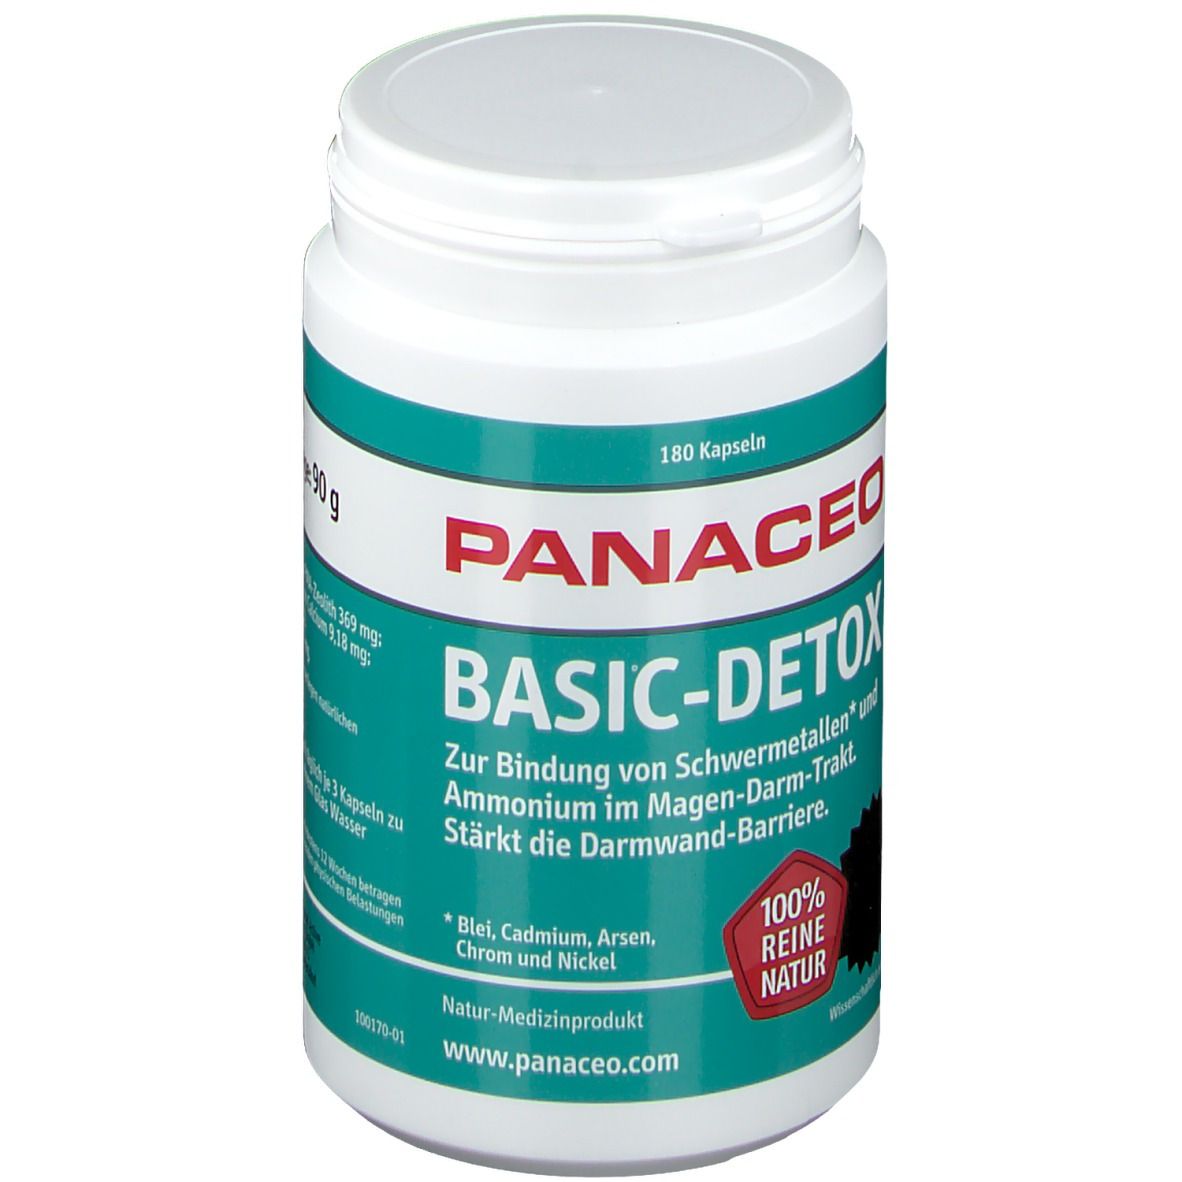 PANACEO Basic-Detox